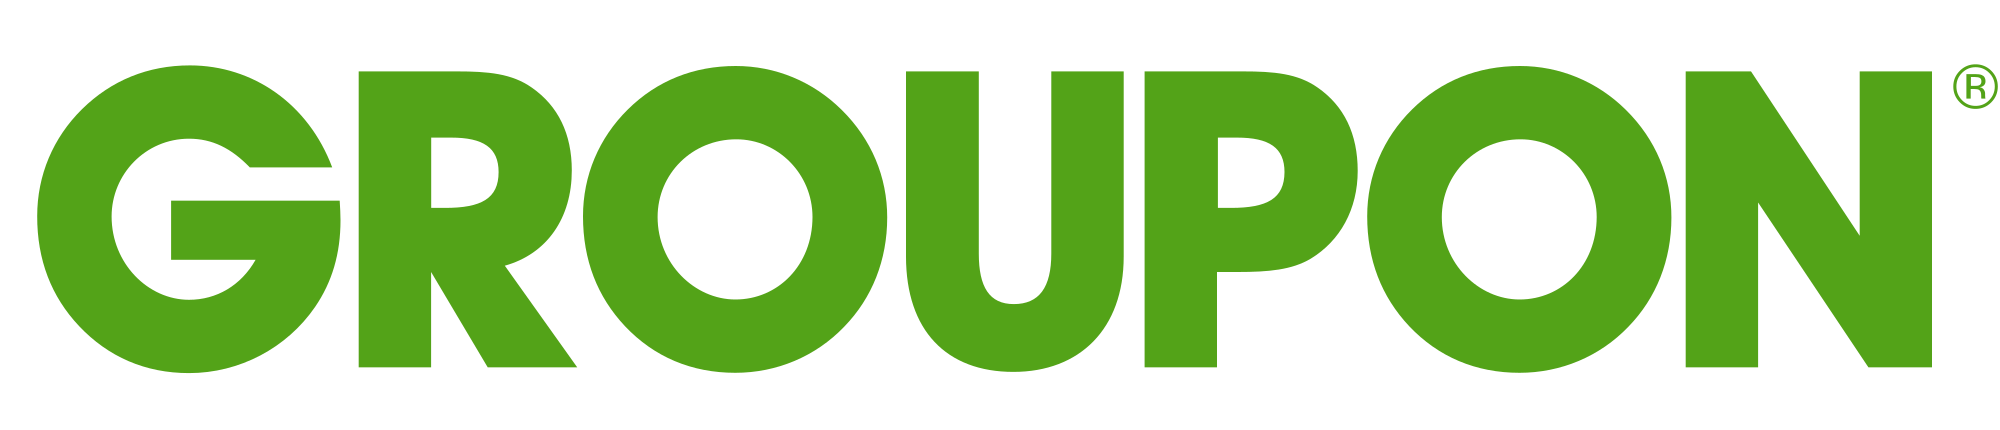 integration-partner-logo